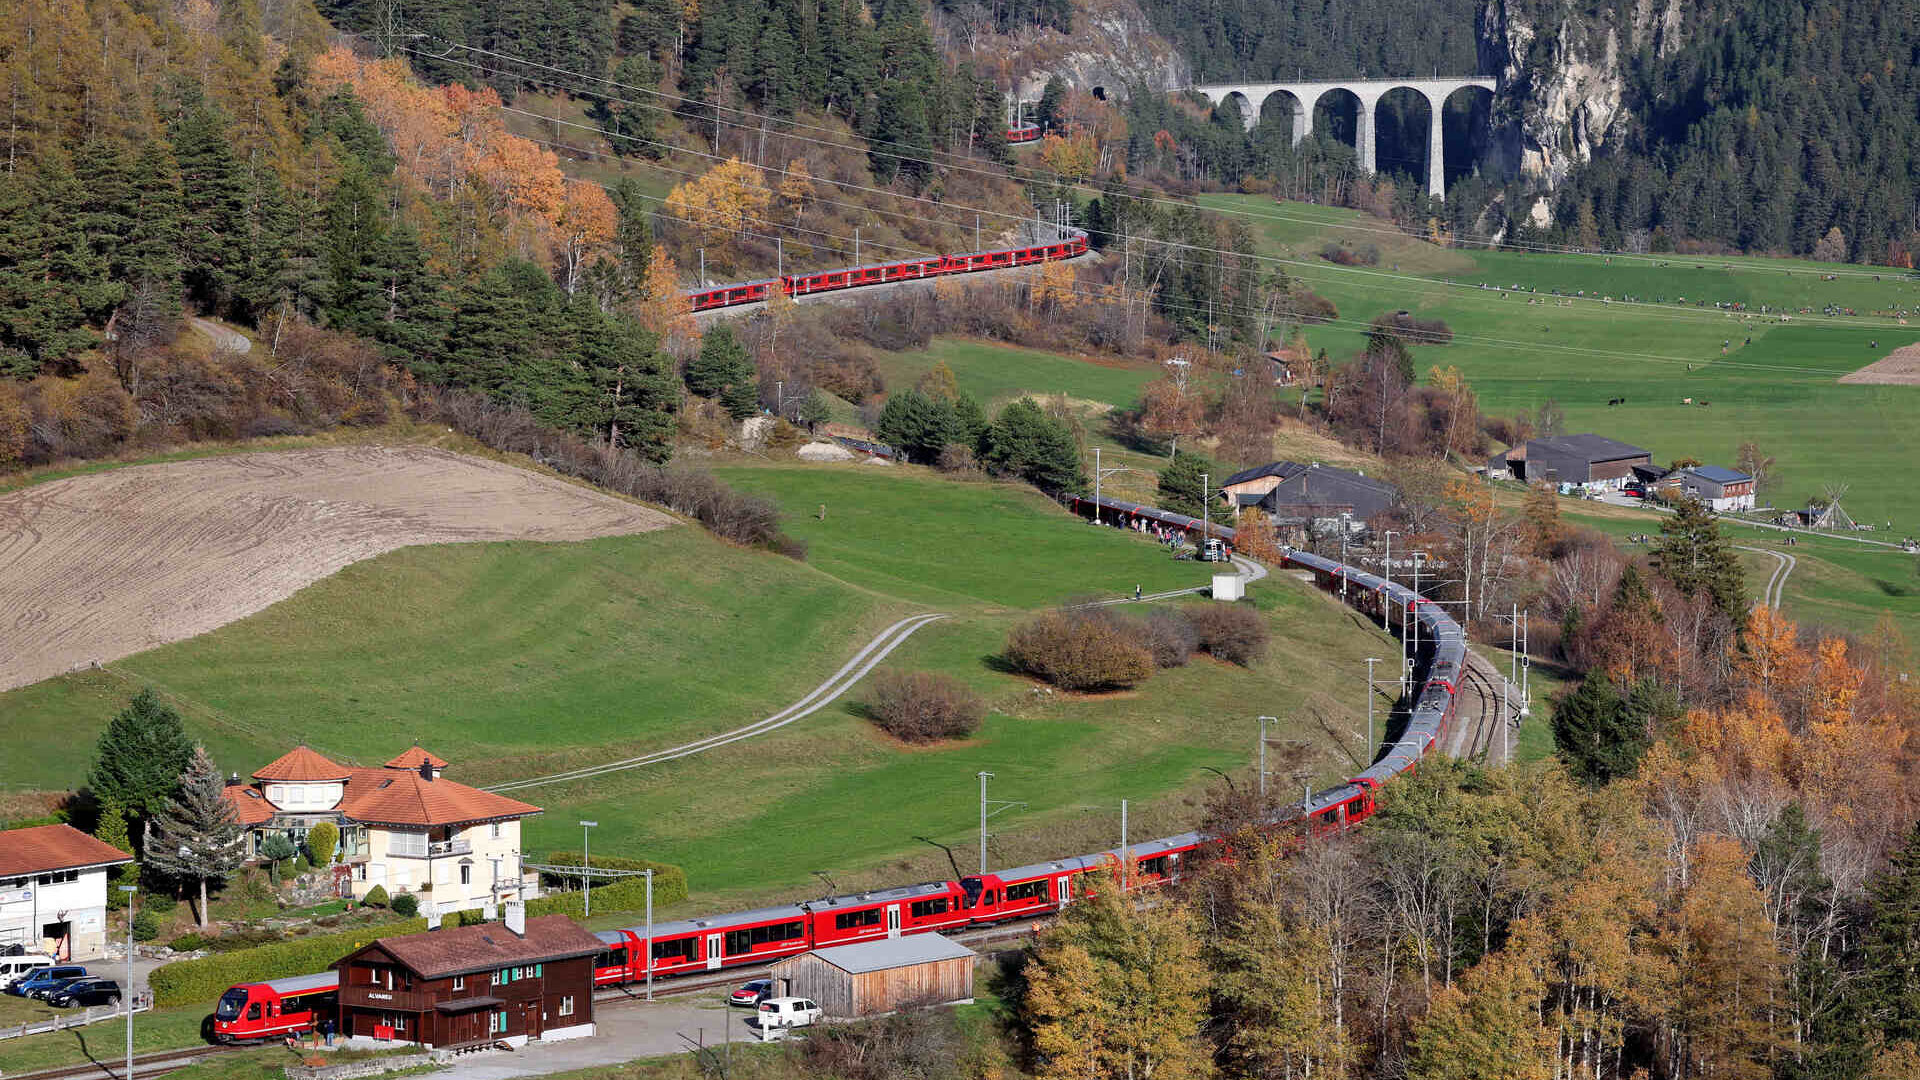 29 оны 2022-р сарын XNUMX-нд Швейцарийн Рейтиан төмөр замын Альбула шугам дээр дэлхийн хамгийн урт нарийн царигтай галт тэрэг (Фото: Энди Меттлер/Швейцарь-Зураг)